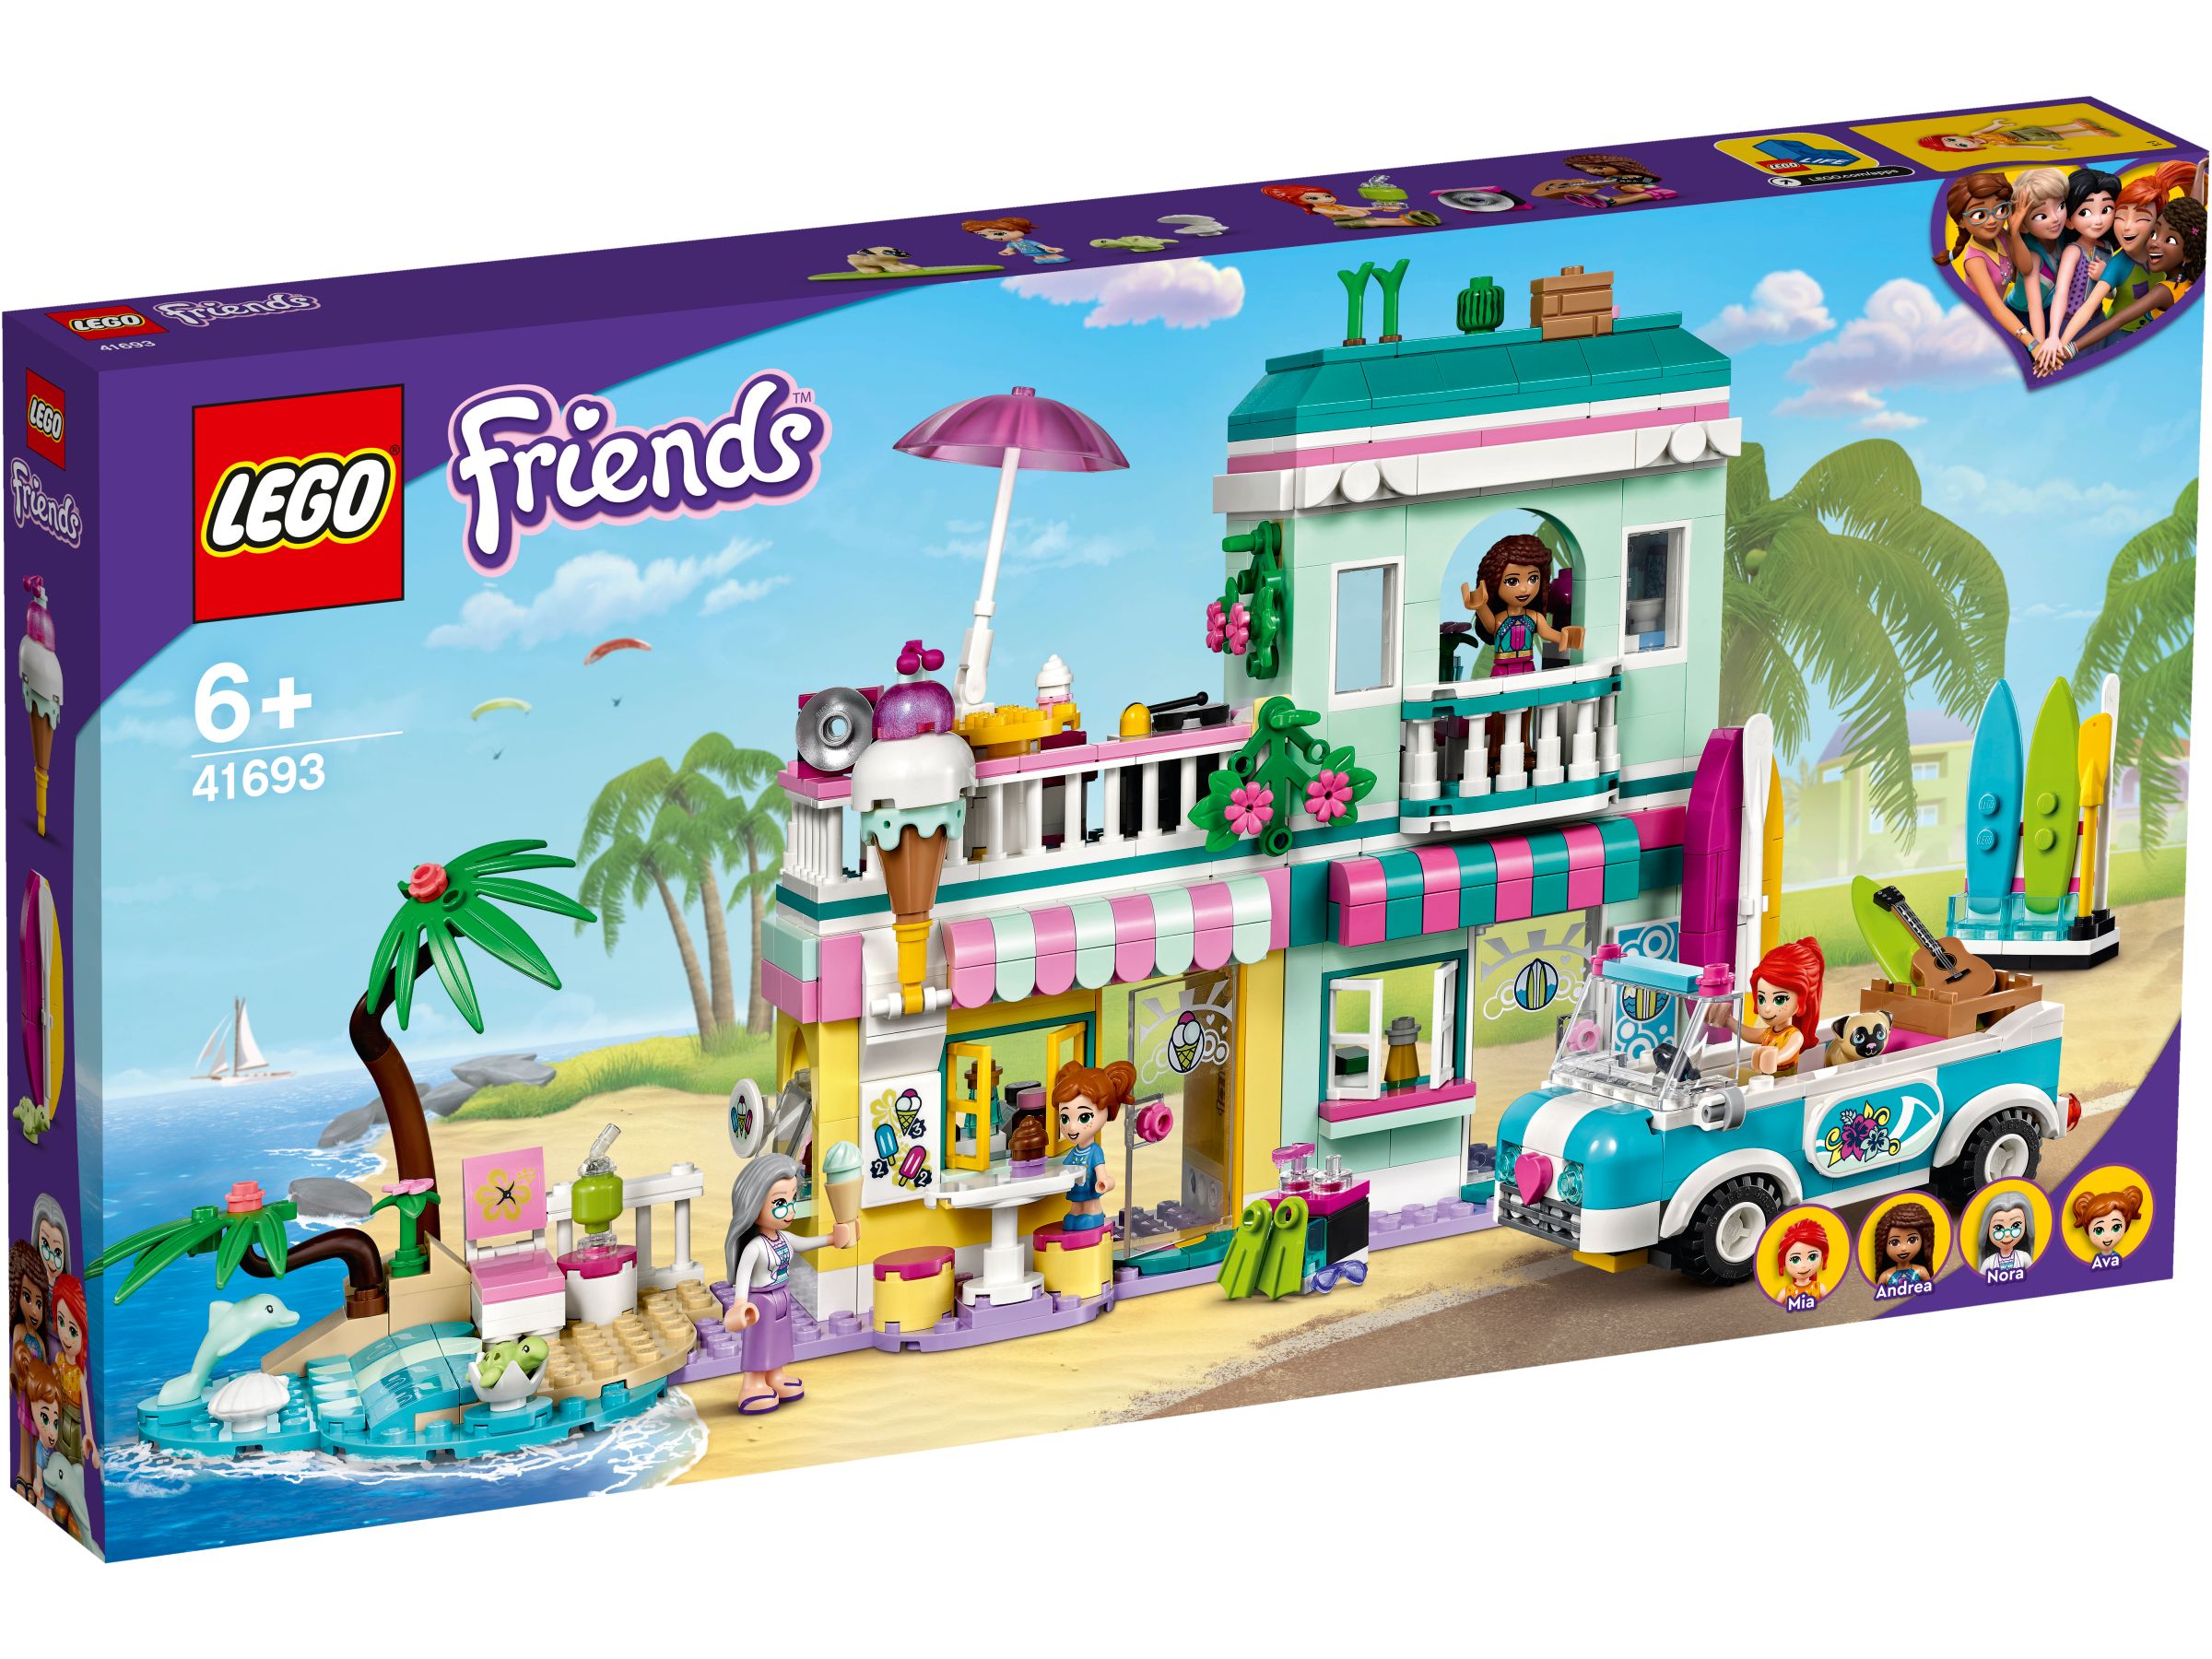 LEGO Friends 41693 Surfer-Strandhaus LEGO_41693_box1_v29.jpg